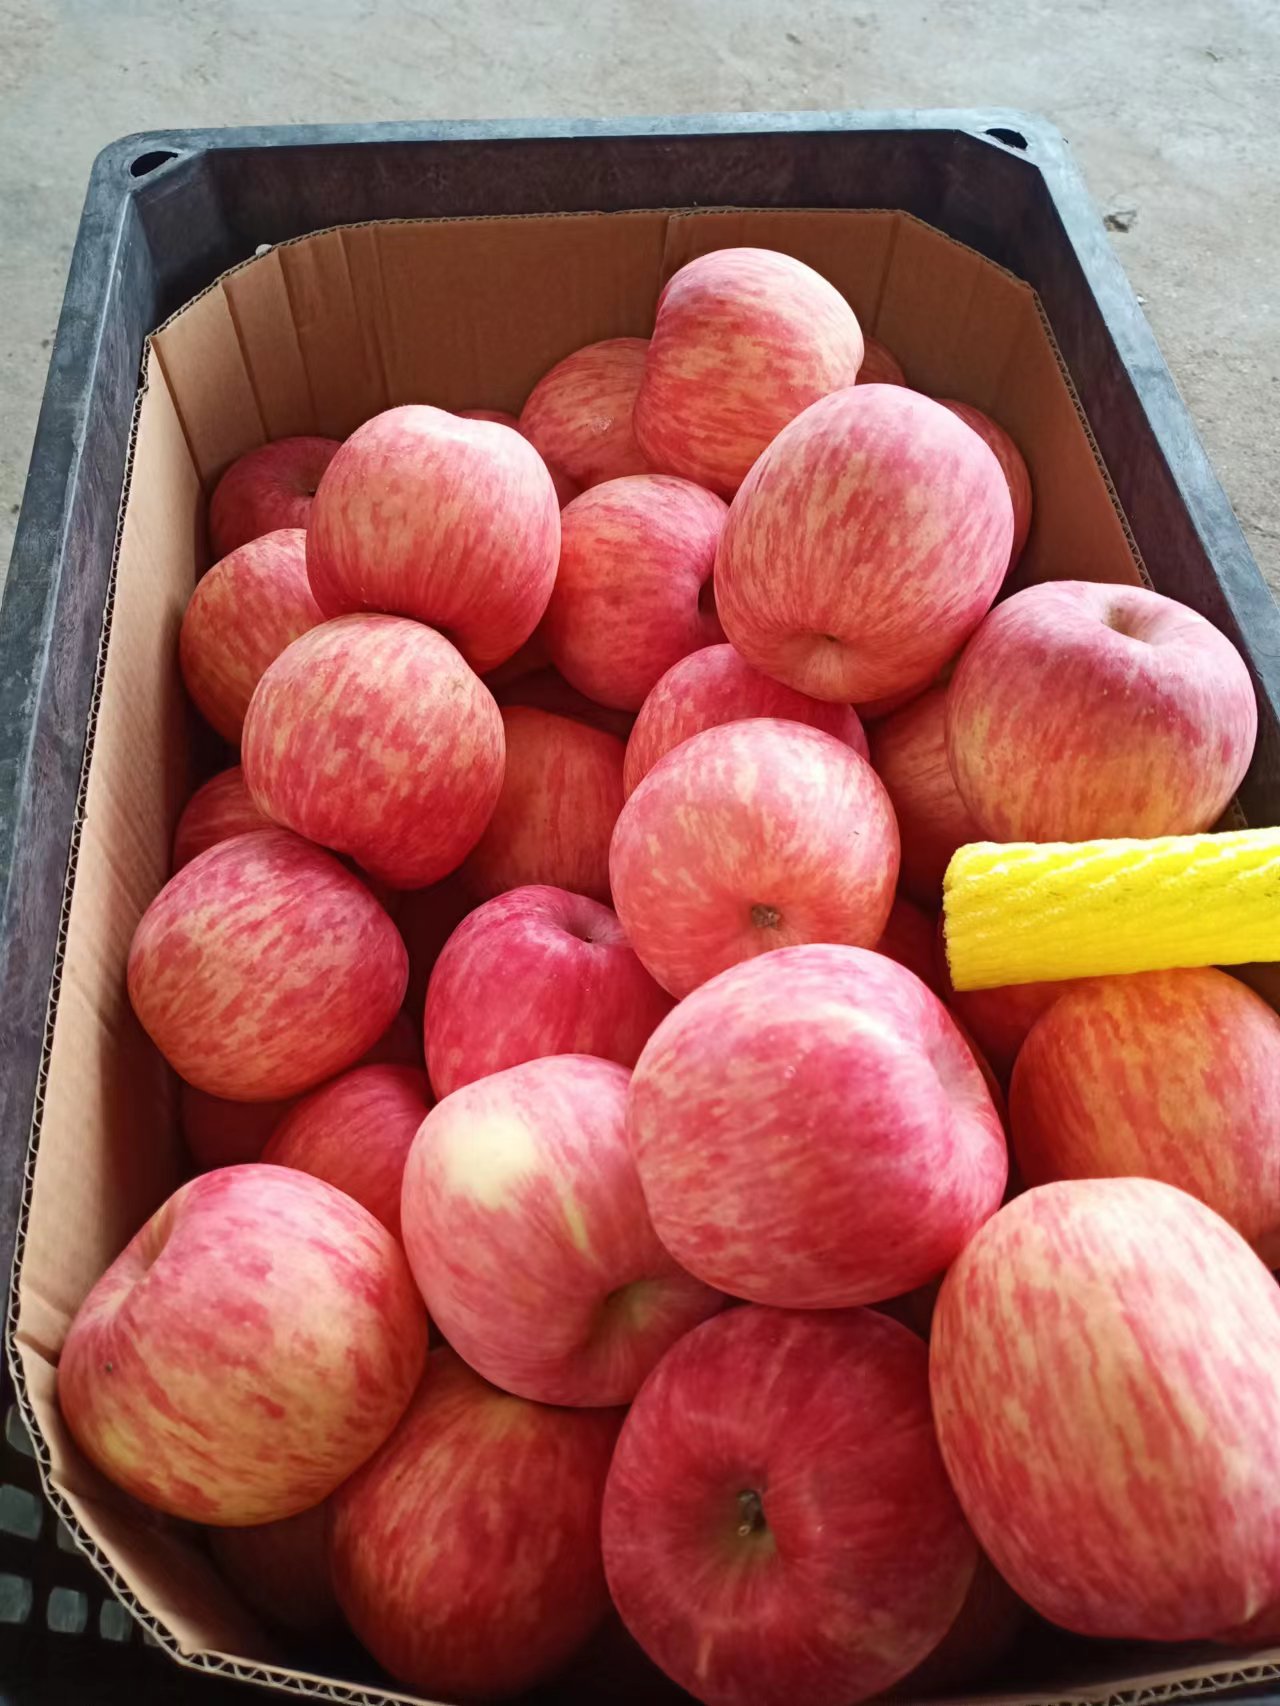 沂水县红富士苹果 优质红富士苹果批发产地 支持全国发货